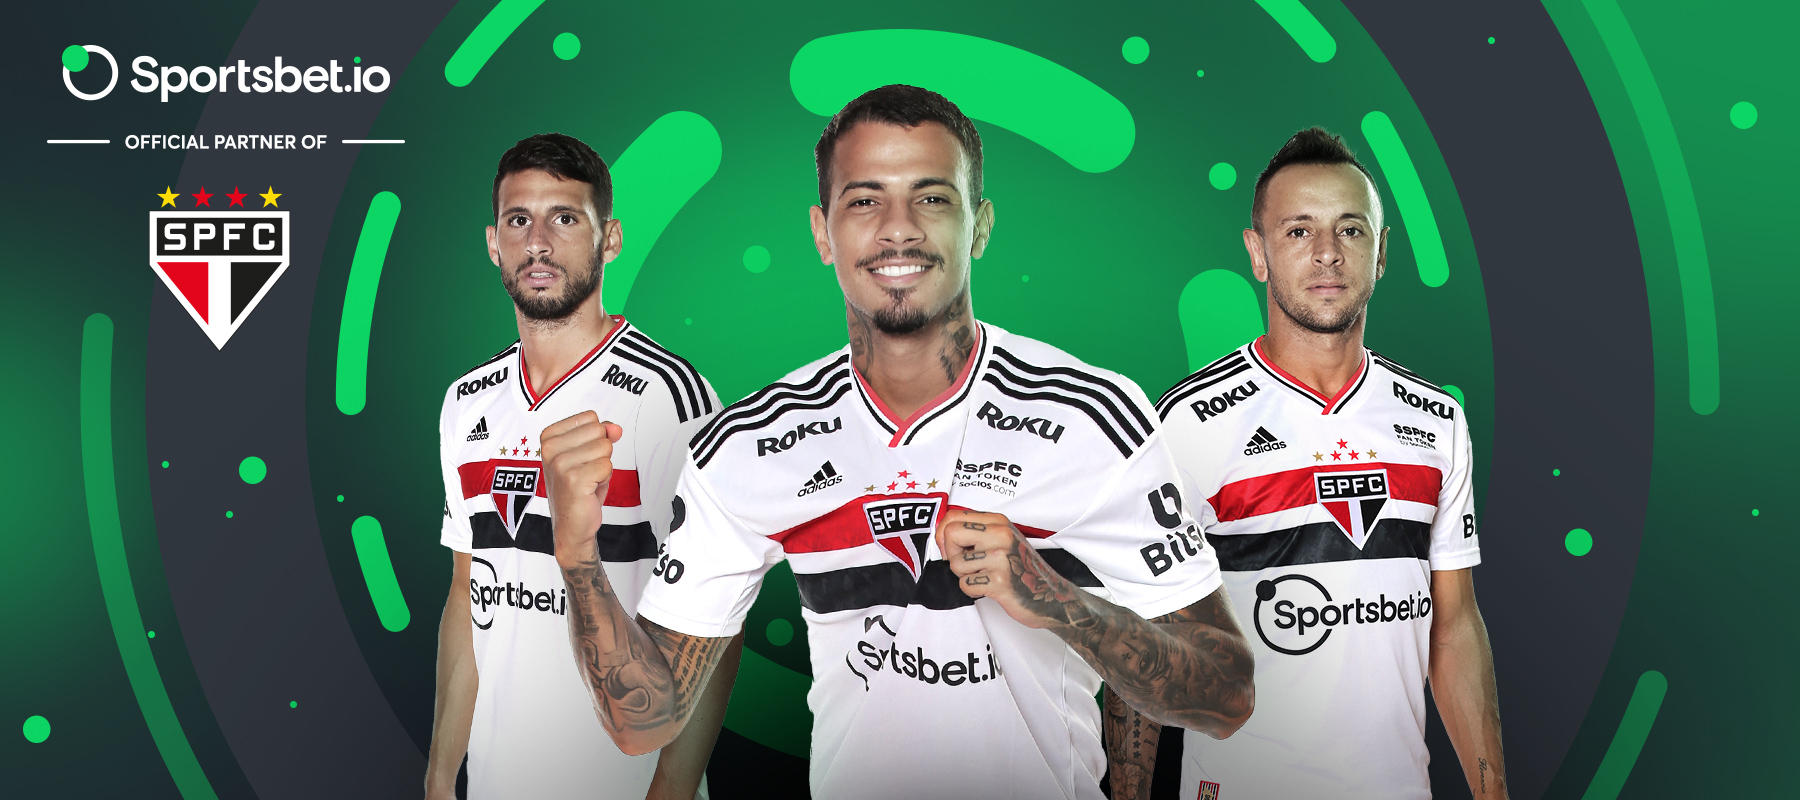 Conoce a los socios de Sportsbet.io: São Paulo FC